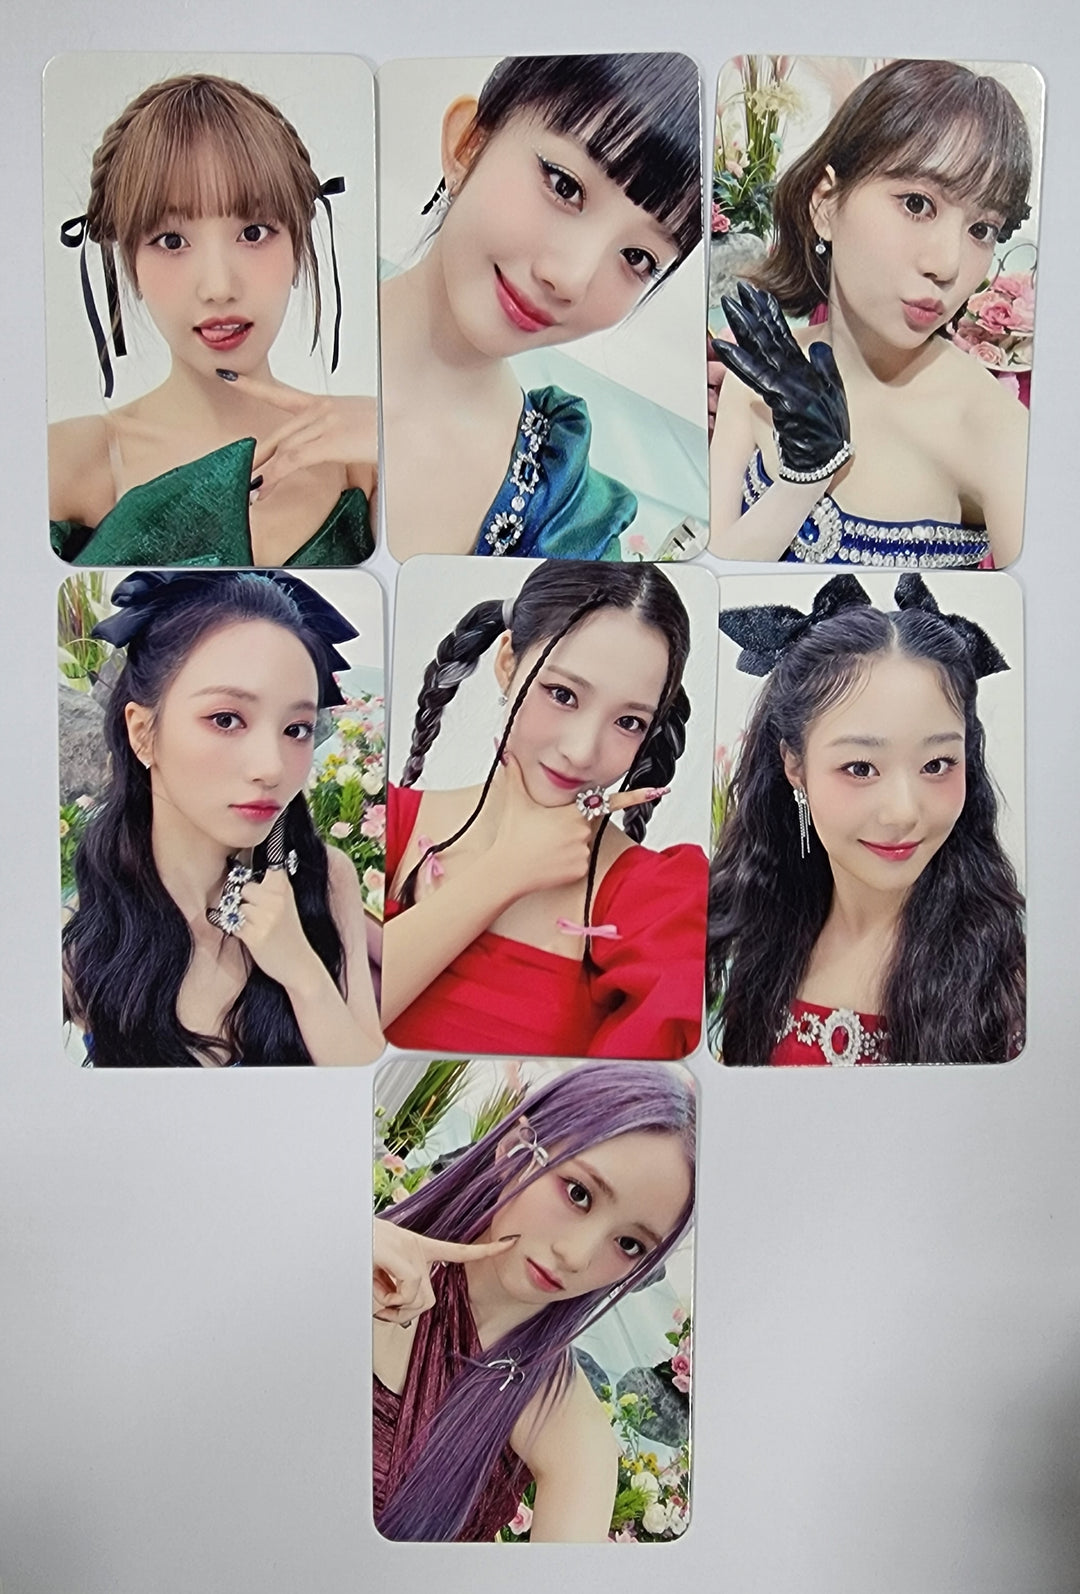 체리블렛 'Cherry Dash' - 디어 마이 뮤즈 예약판매 혜택 포토카드